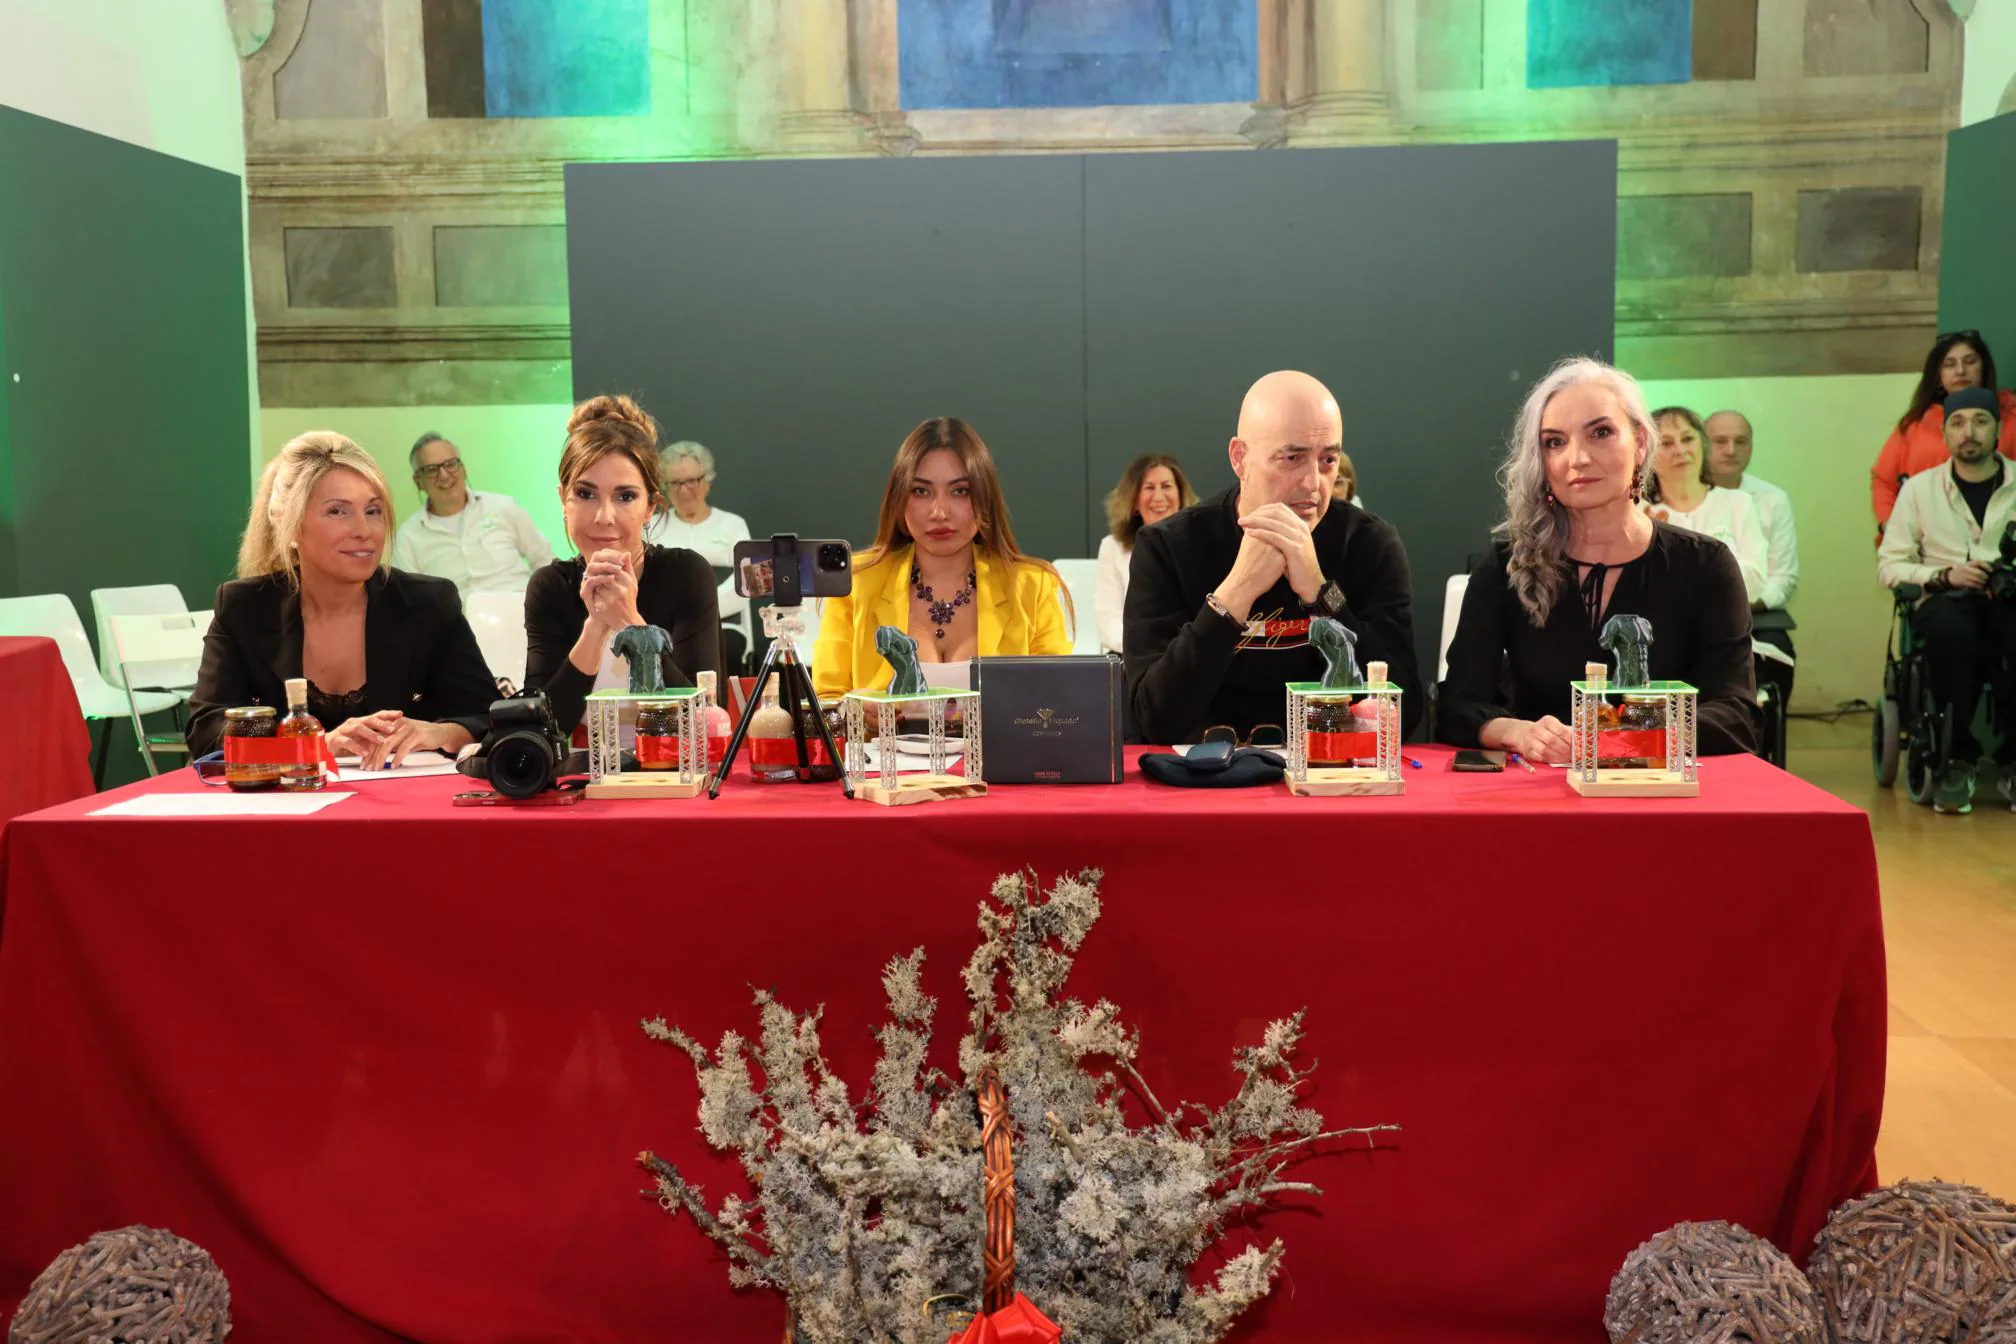 De izquierda a derecha, Amaya, Verónica Laviana, Fiorella Figueroa, Miguel Ángel Sánchez y María Encina Fernández, integrantes del jurado